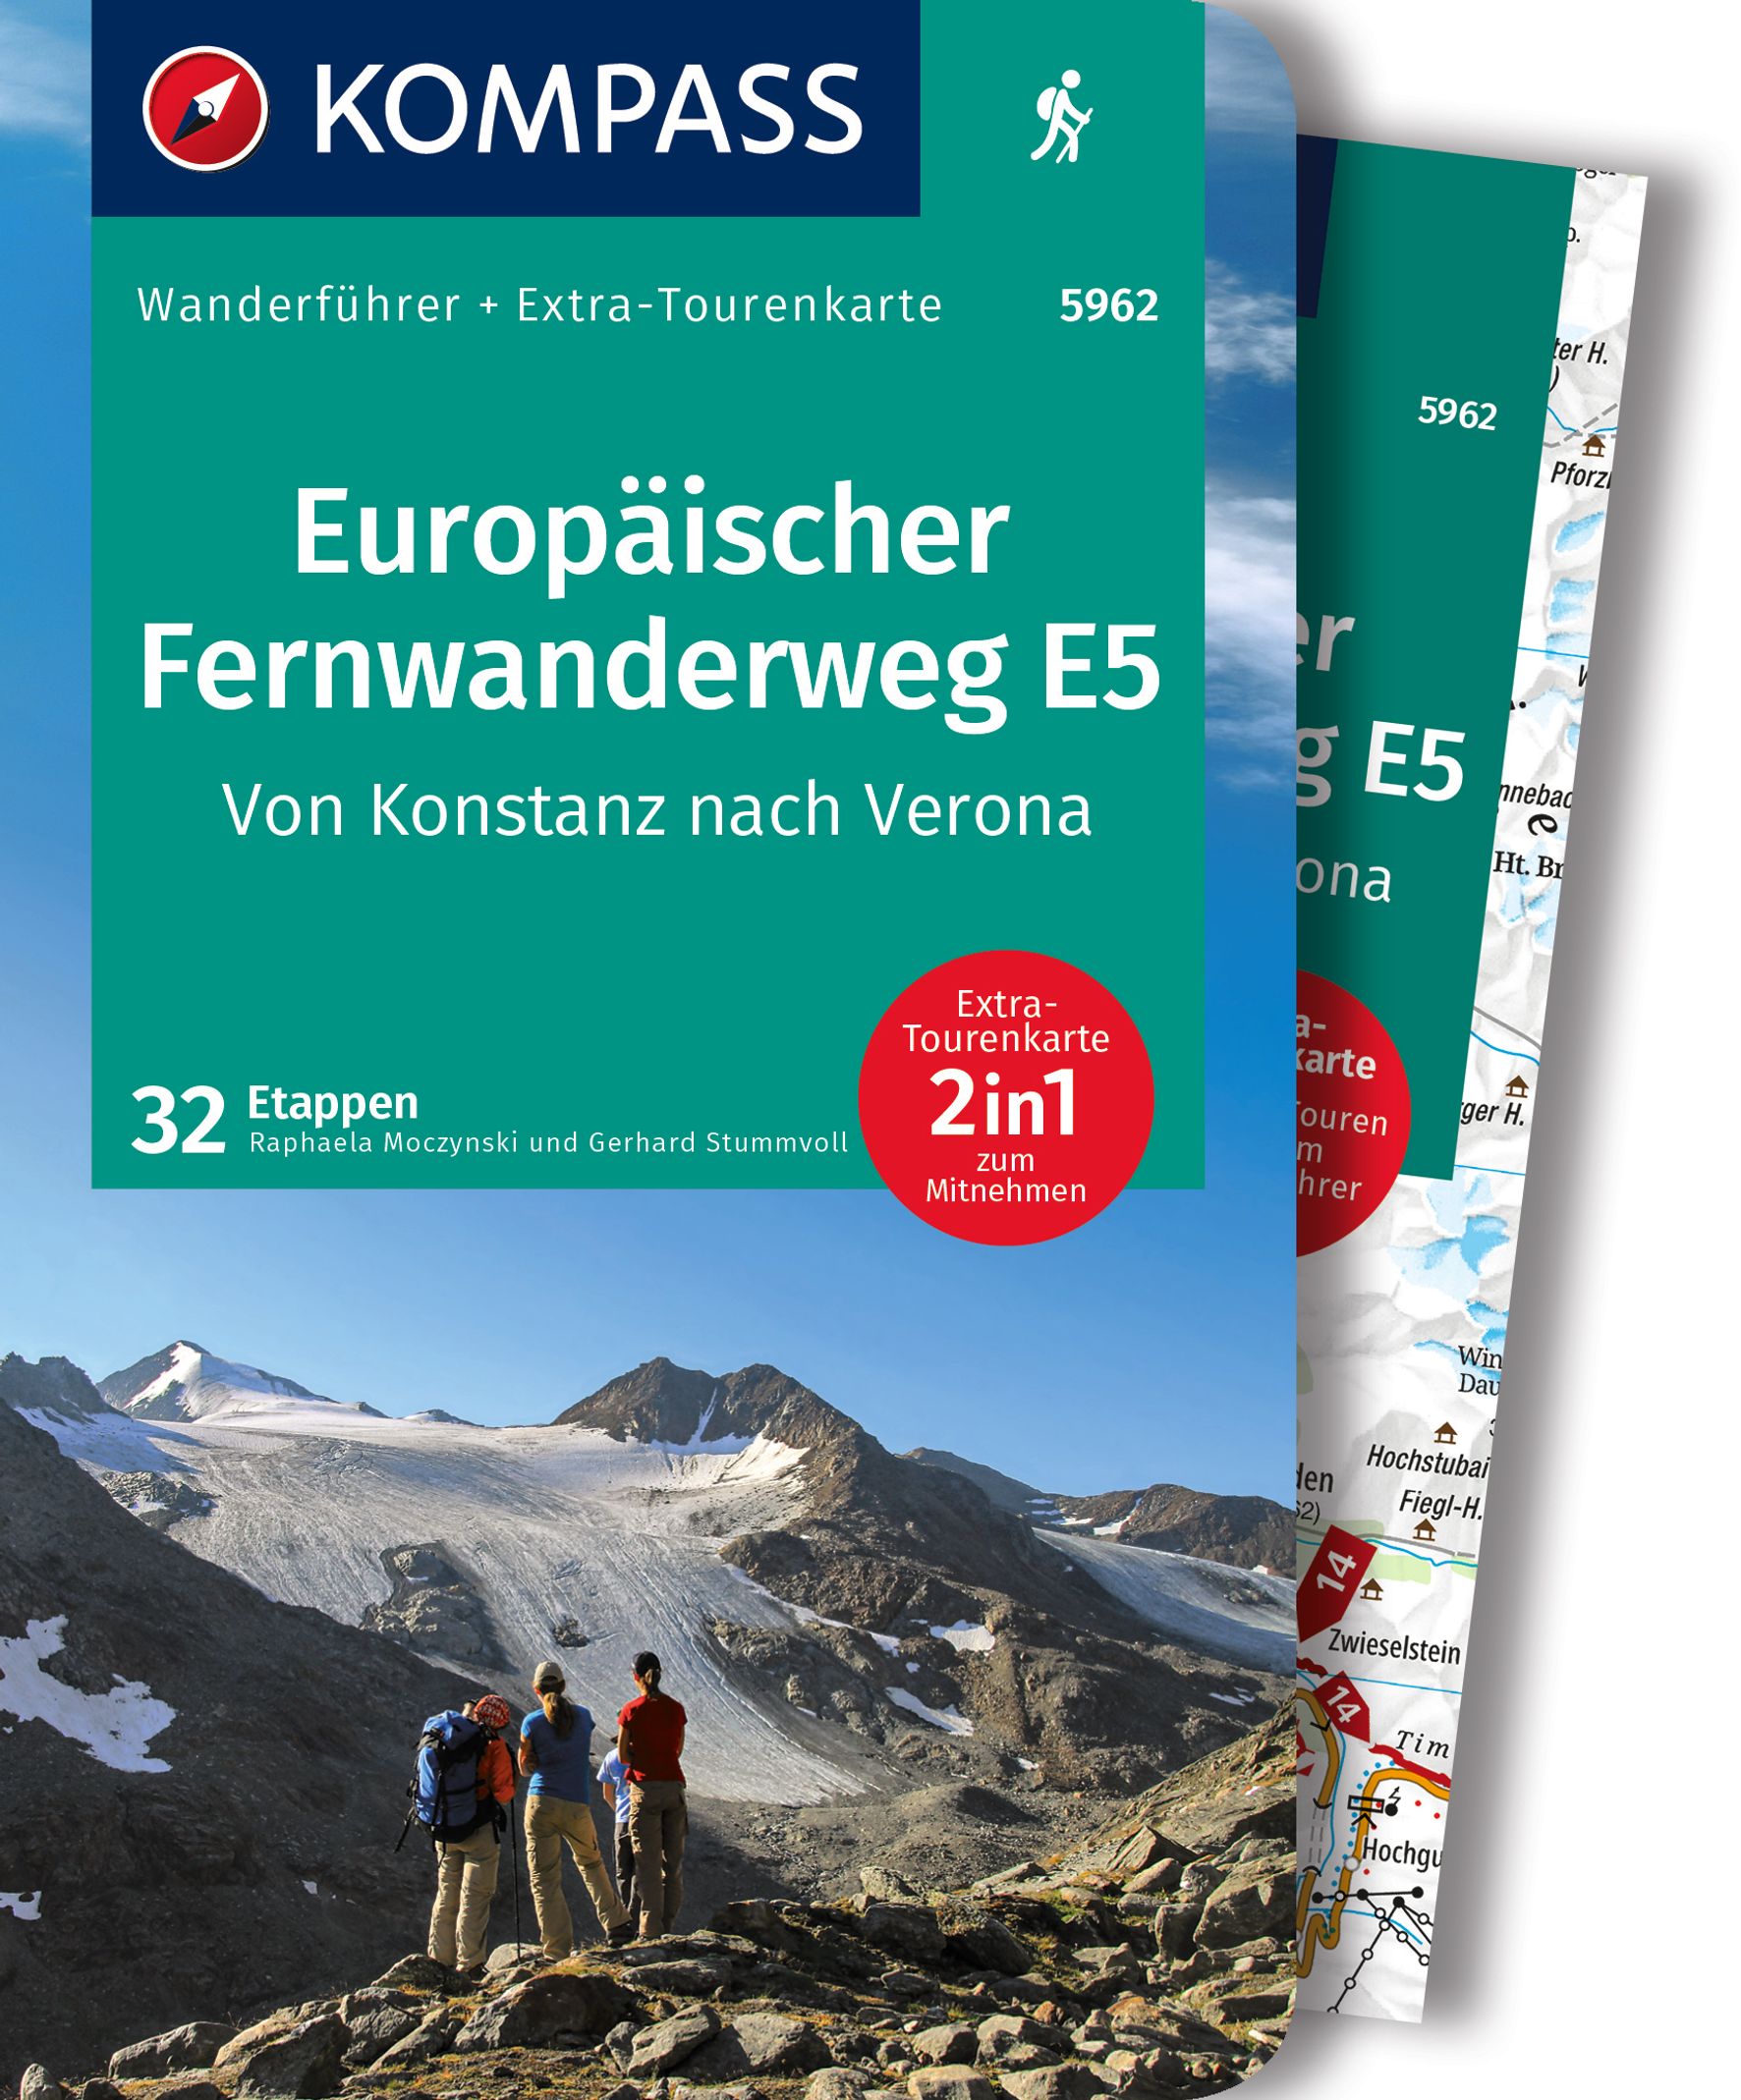 MAIRDUMONT Europäischer Fernwanderweg E5, Von Konstanz nach Verona, 32 Etappen mit Extra-Tourenkarte